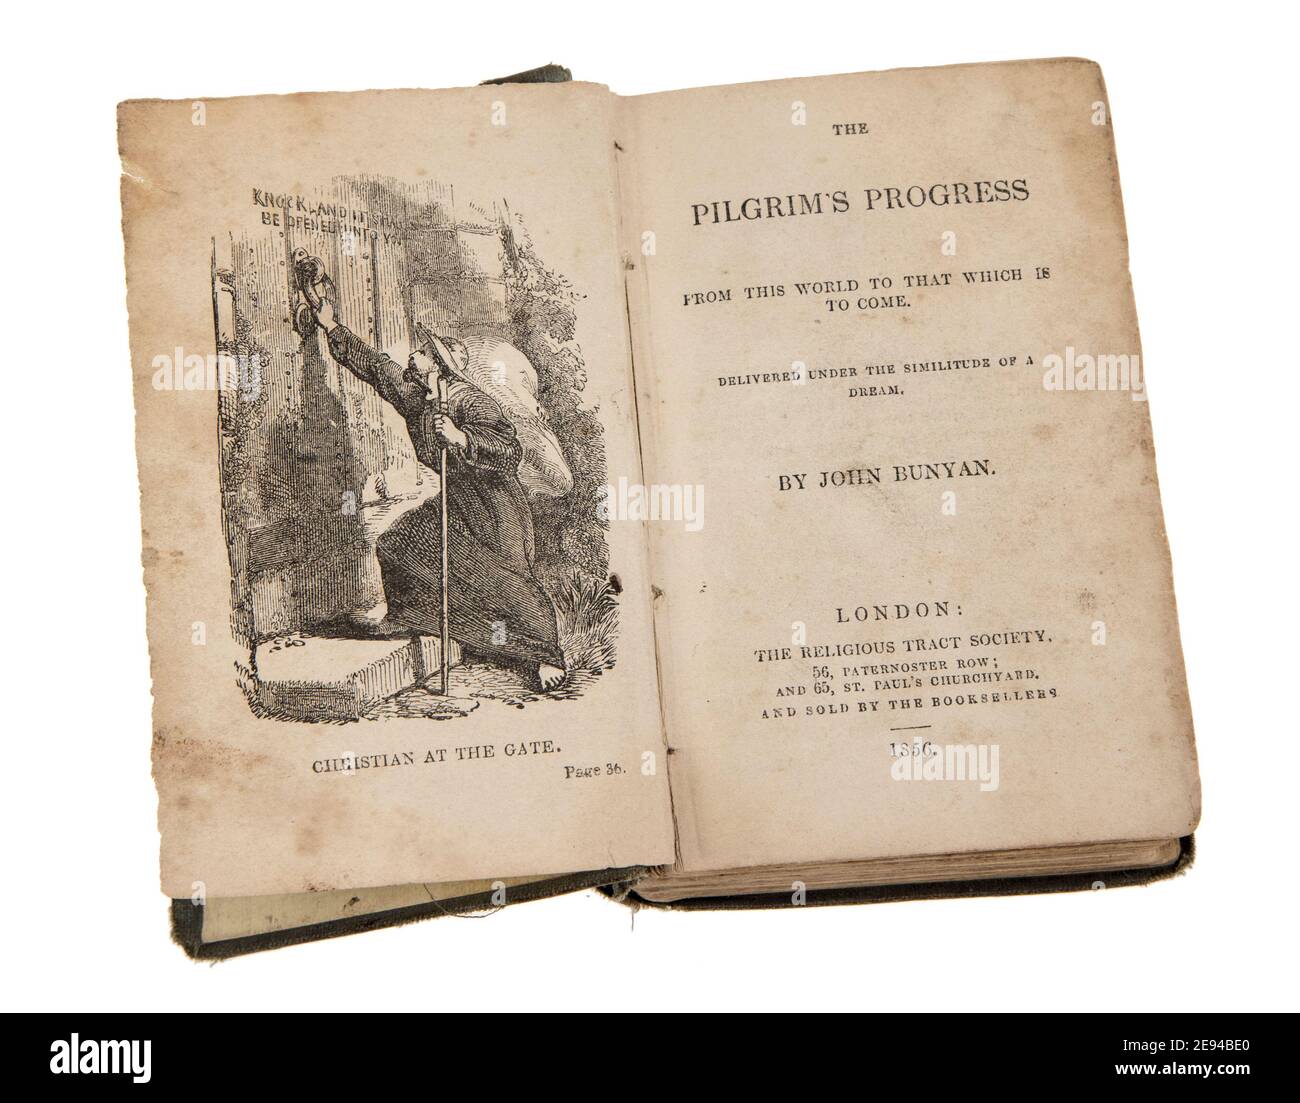 Le progrès du pèlerin par John Buchan publié par un religieux éditeur en 1856 Banque D'Images